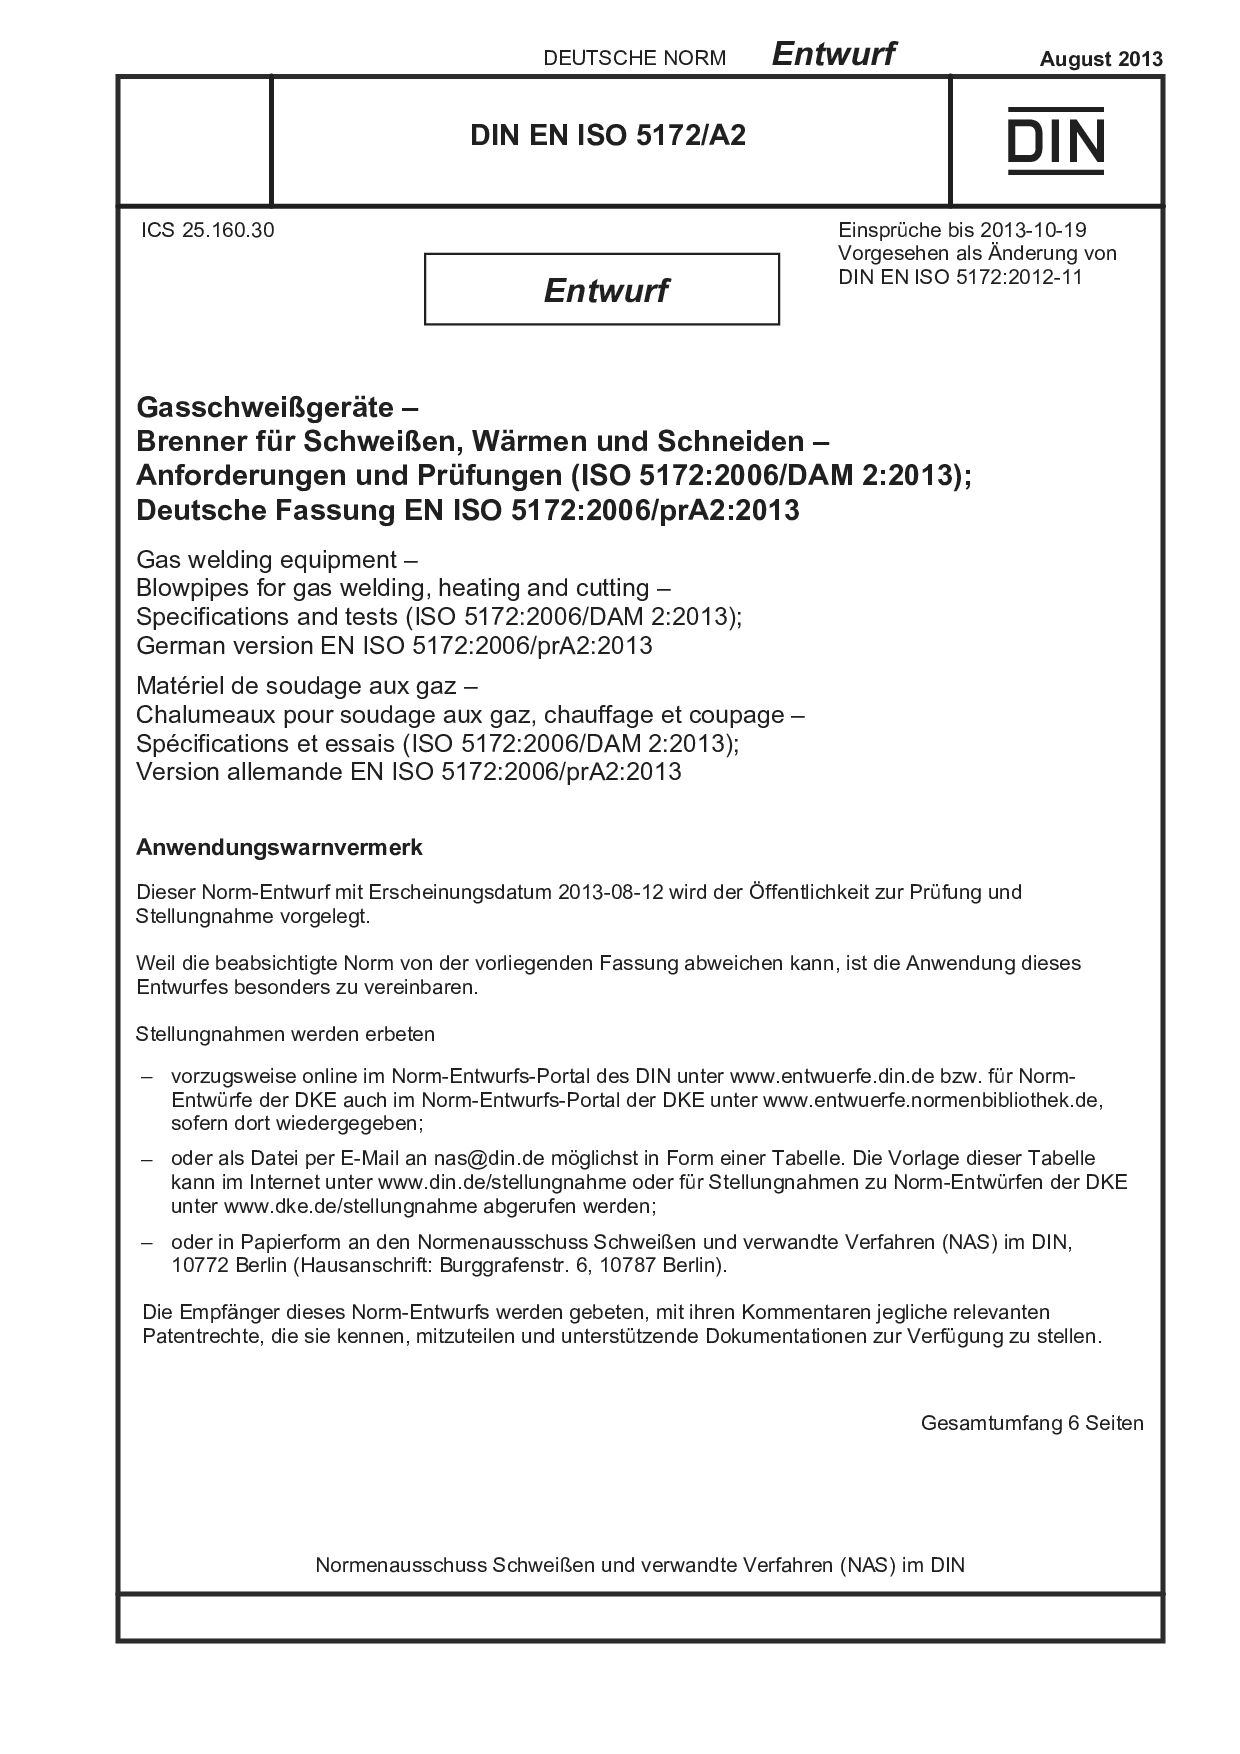 DIN EN ISO 5172 A2 E:2013-08